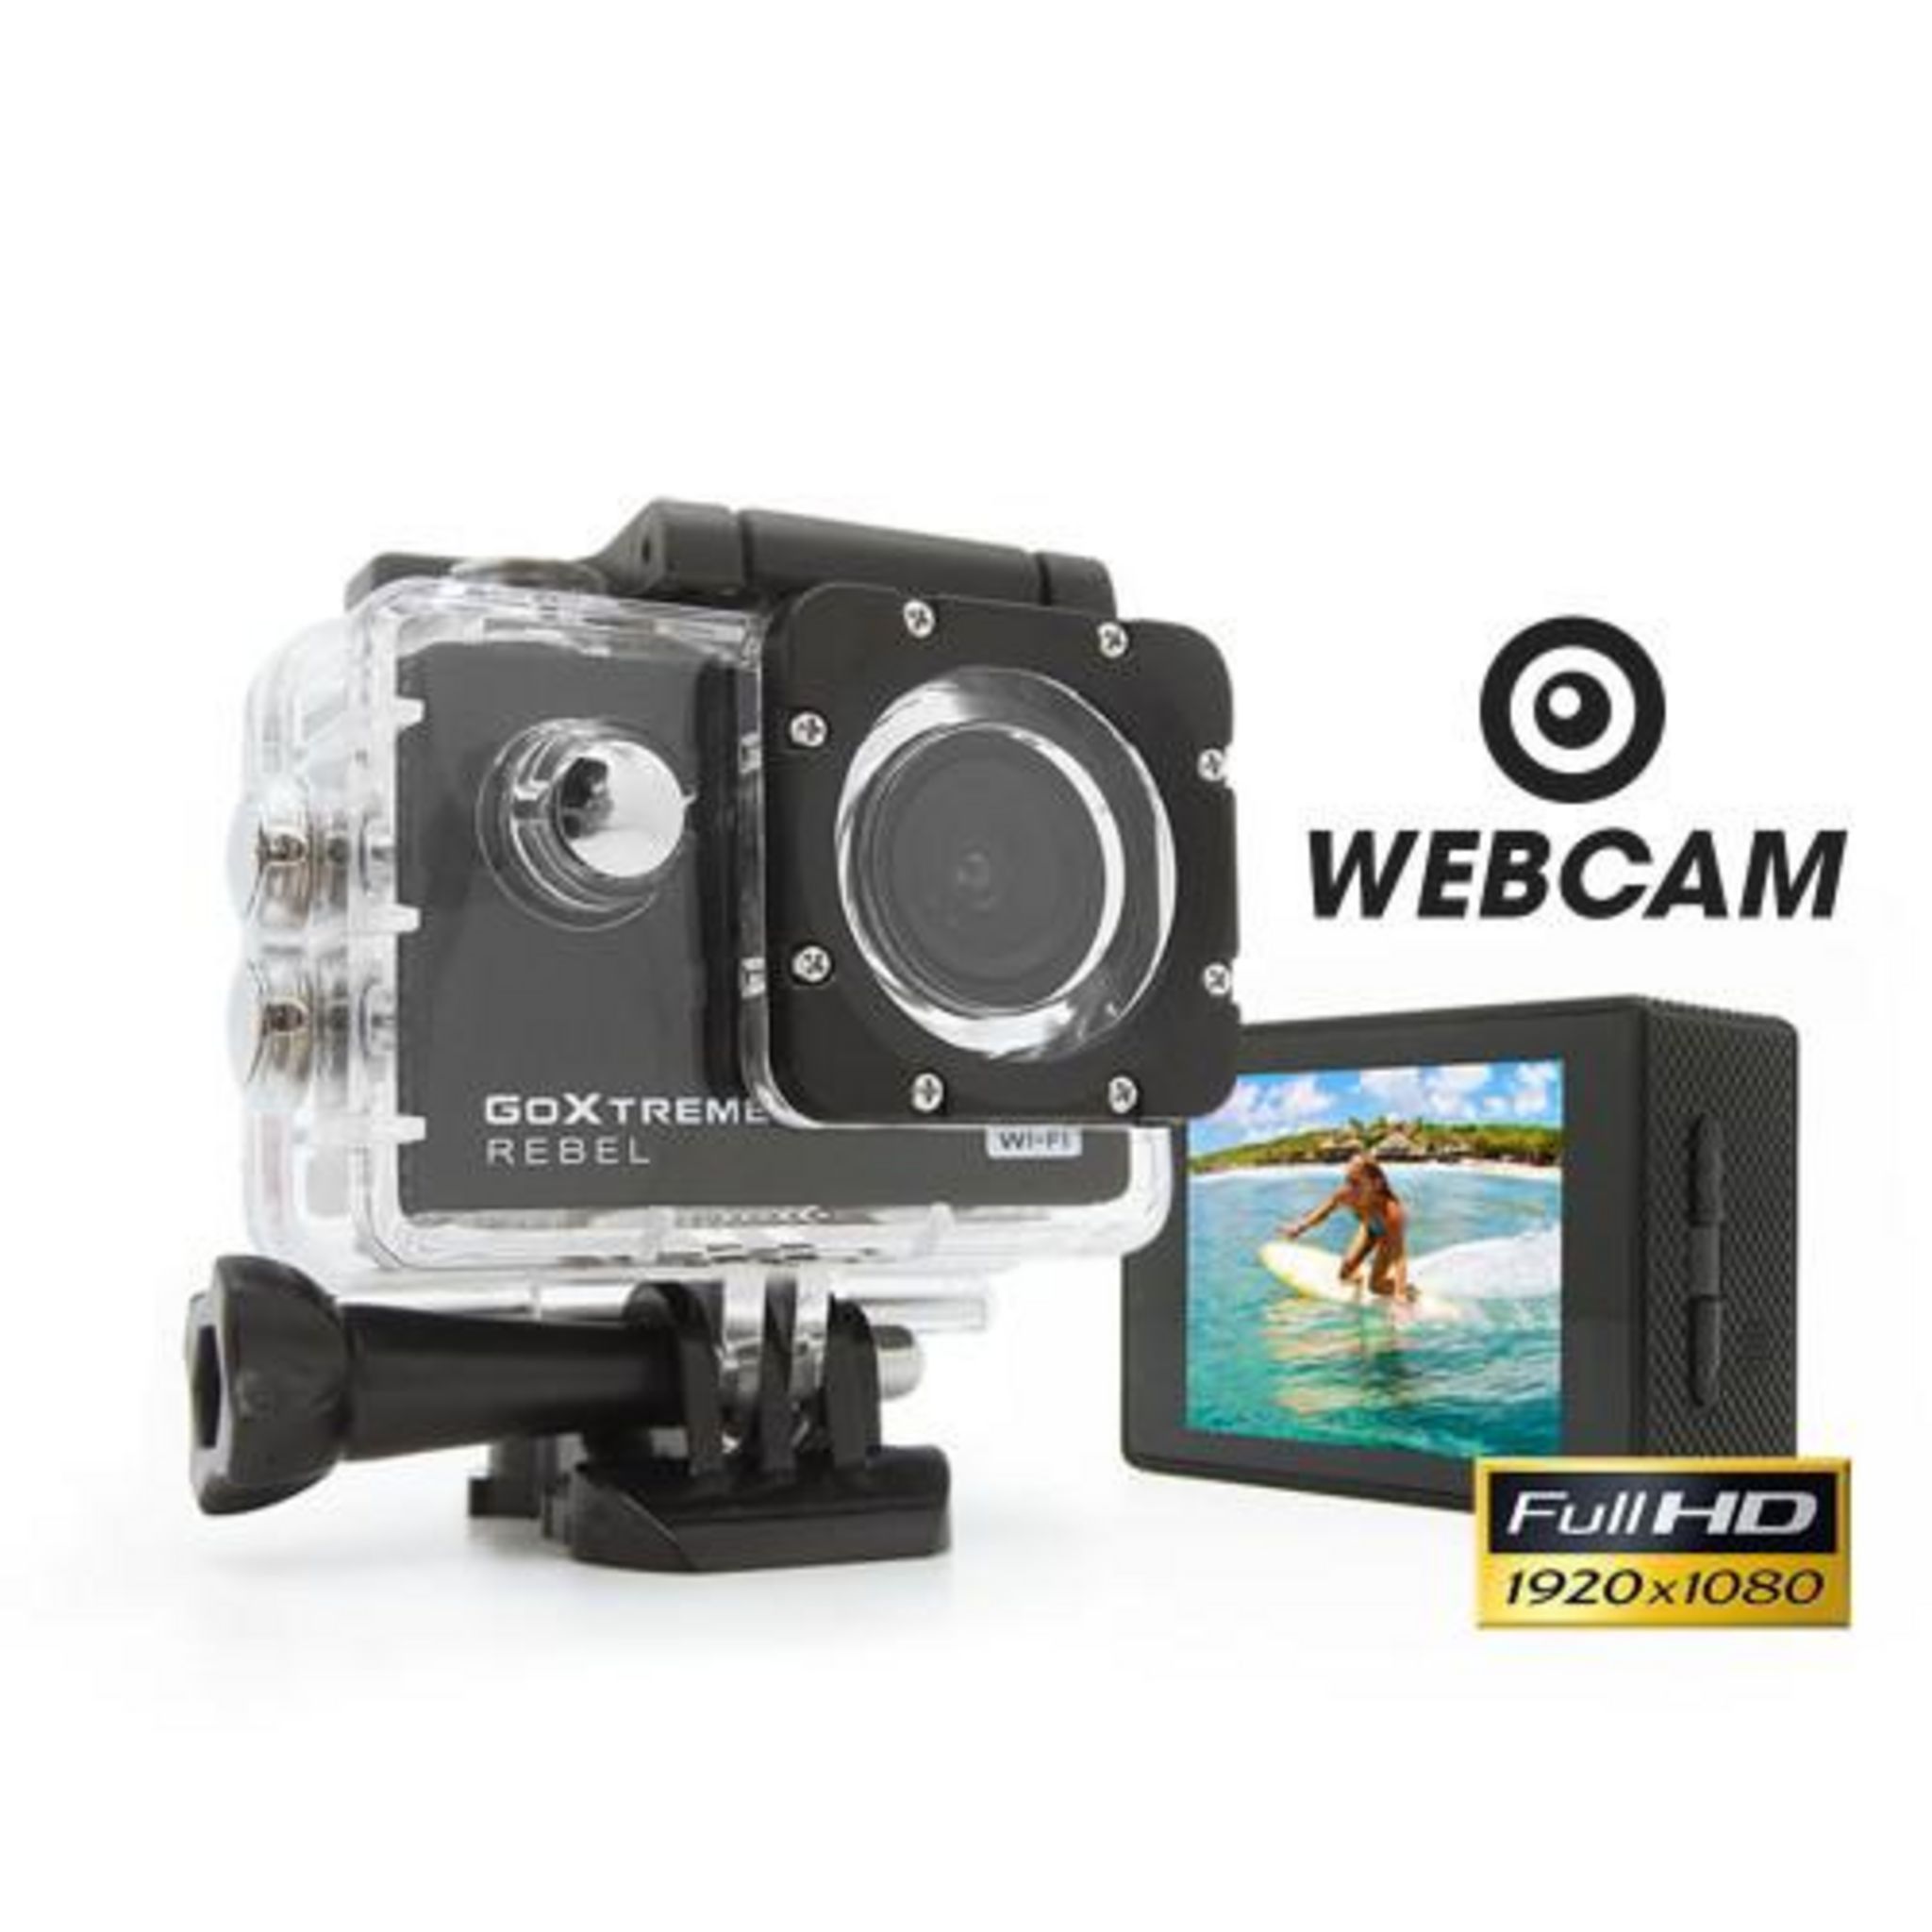 Caméra sportive GoAdventure HD 4K WIFI avec boitier étanche